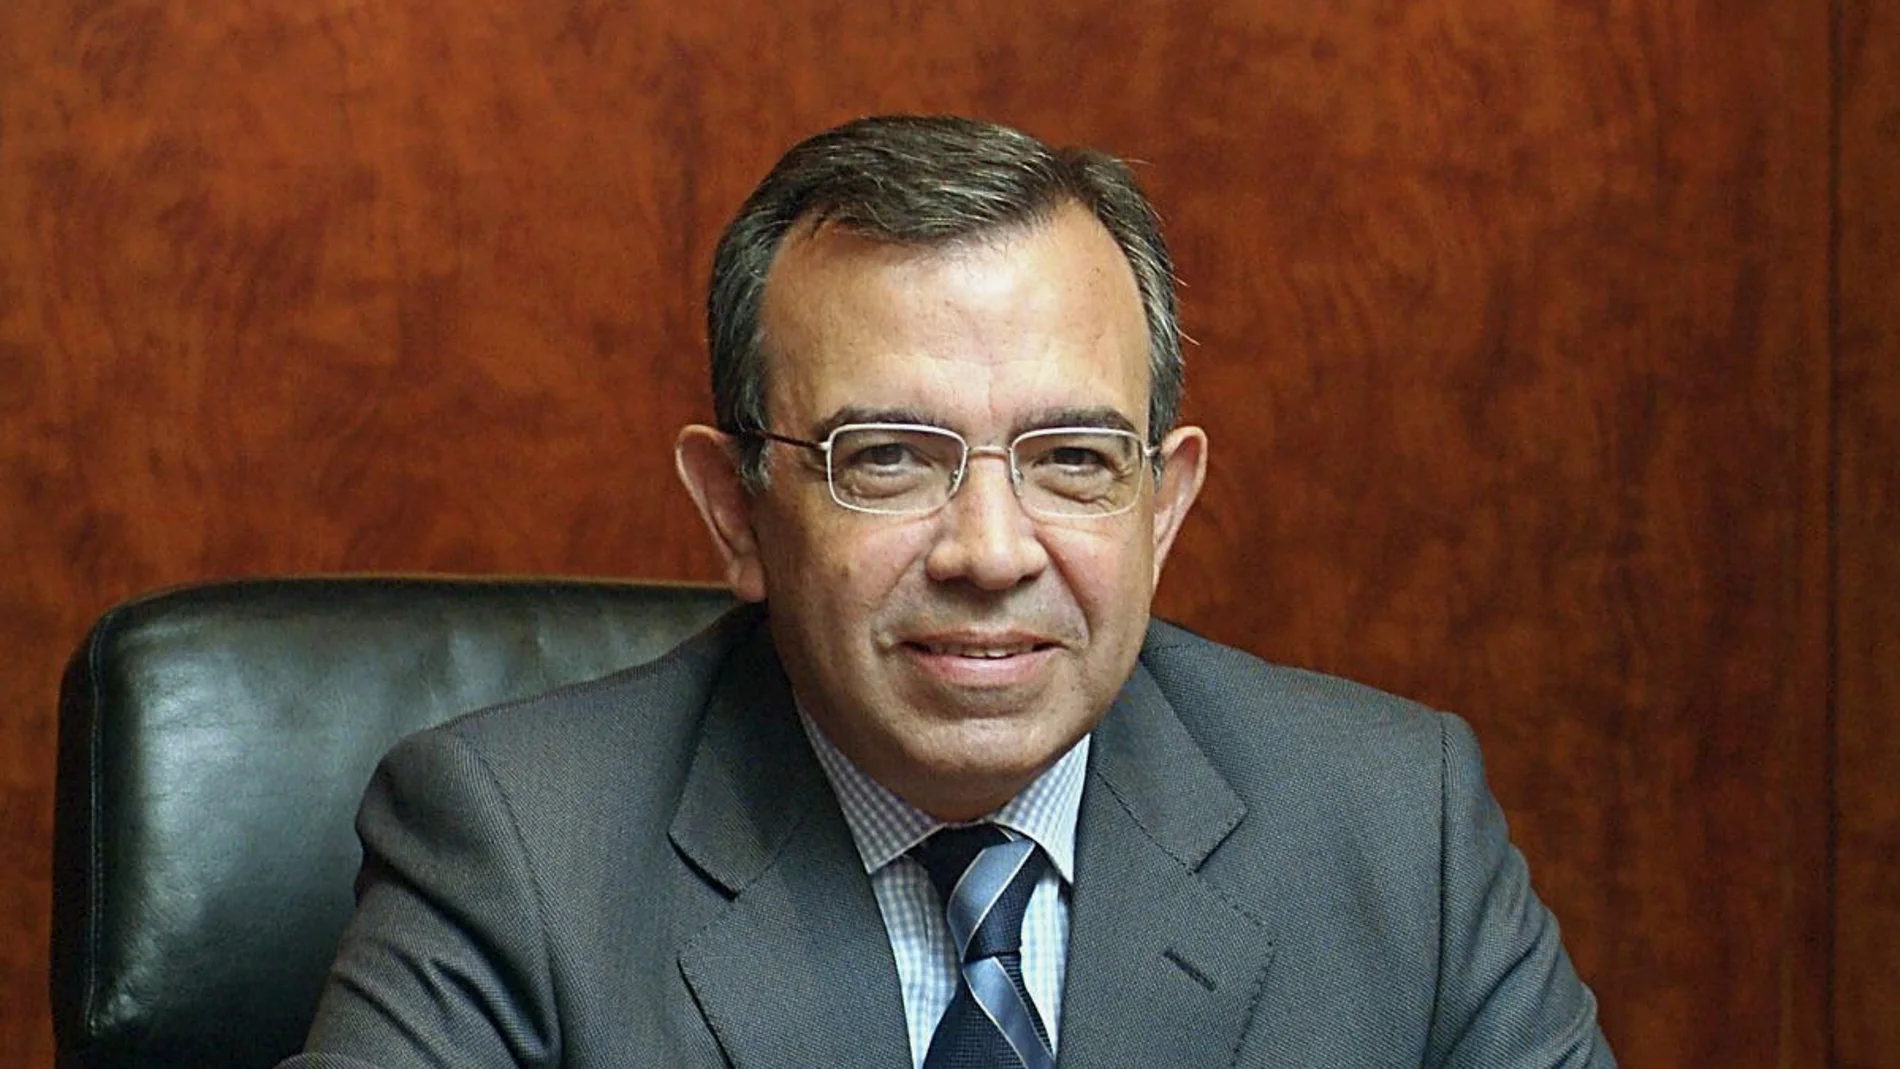 Roberto López Abad, exdirector general de la CAM.